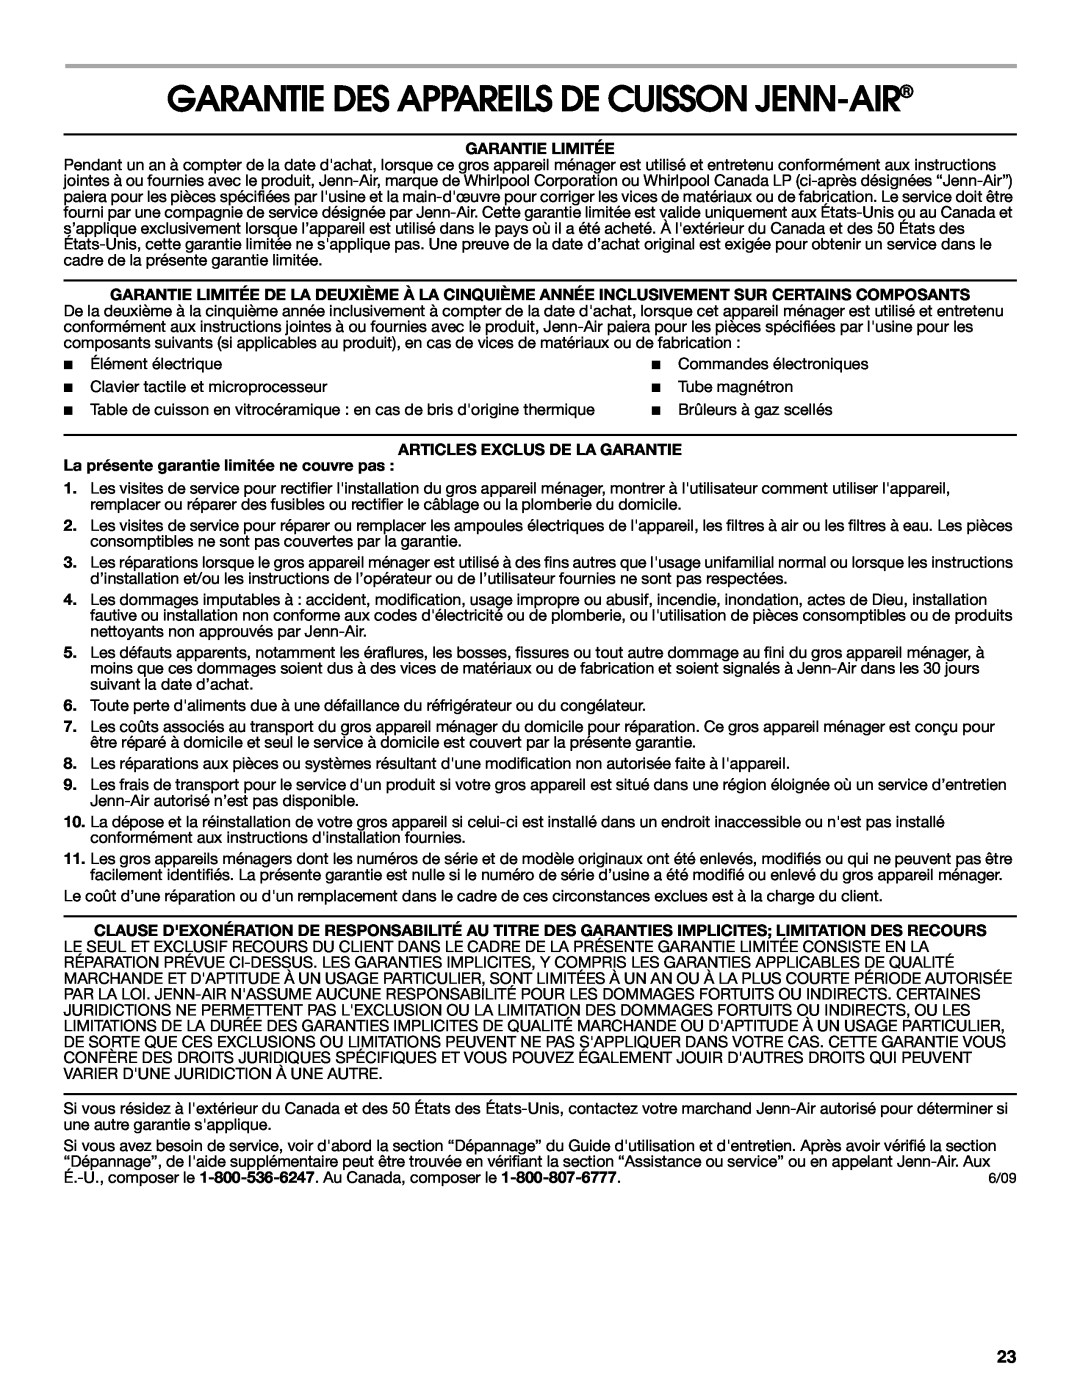 Jenn-Air 20 manual Garantie Des Appareils De Cuisson Jenn-Air, Garantie Limitée, Articles Exclus De La Garantie 